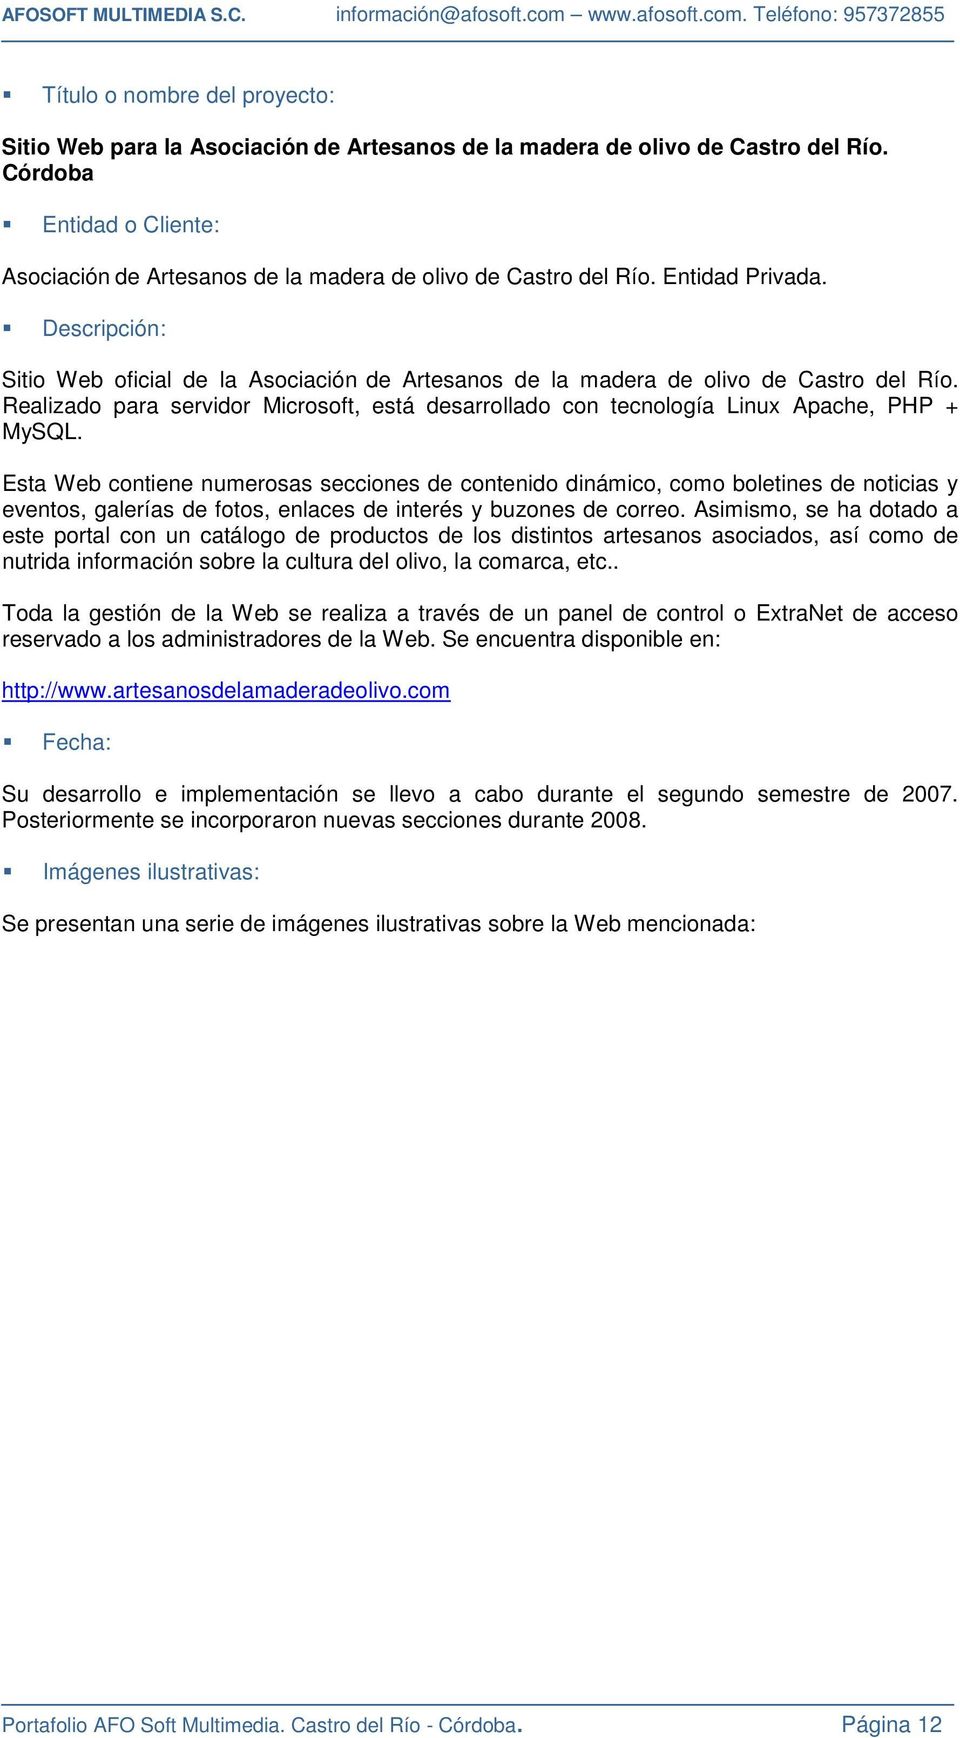 Descripción: Sitio Web oficial de la Asociación de Artesanos de la madera de olivo de Castro del Río. Realizado para servidor Microsoft, está desarrollado con tecnología Linux Apache, PHP + MySQL.